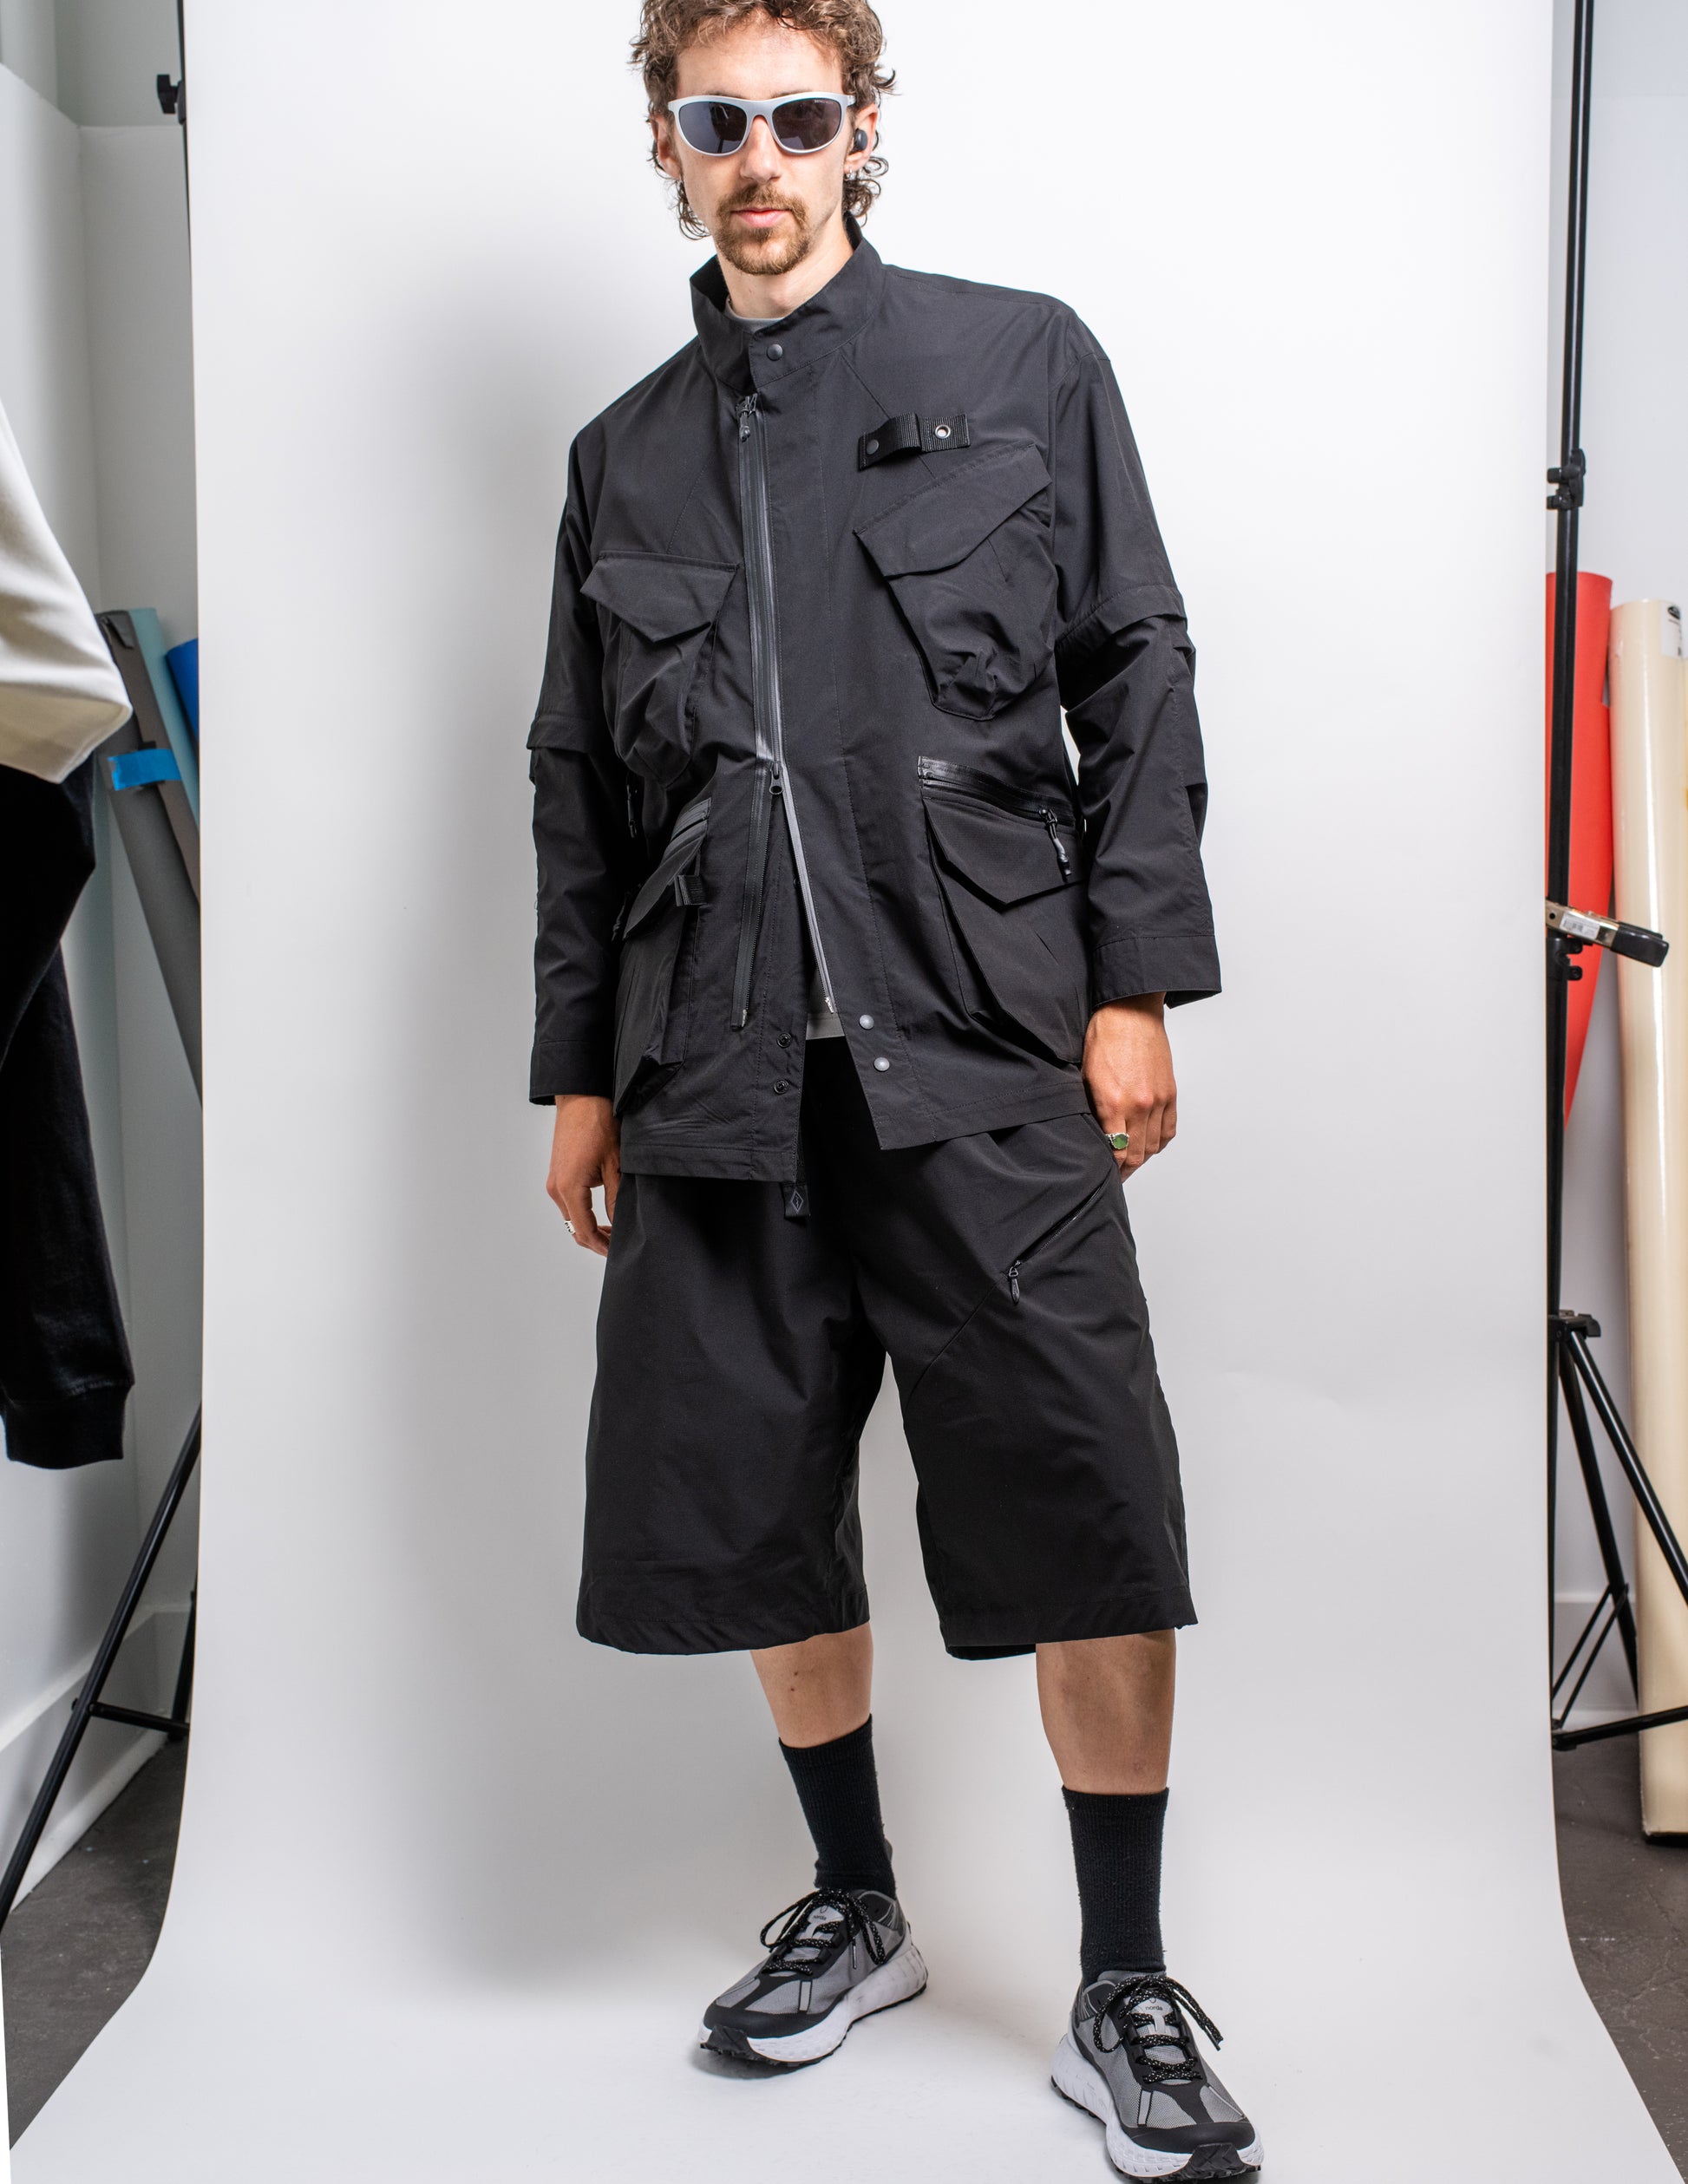 gorpcore oversized nylon shorts and jacket from Japan